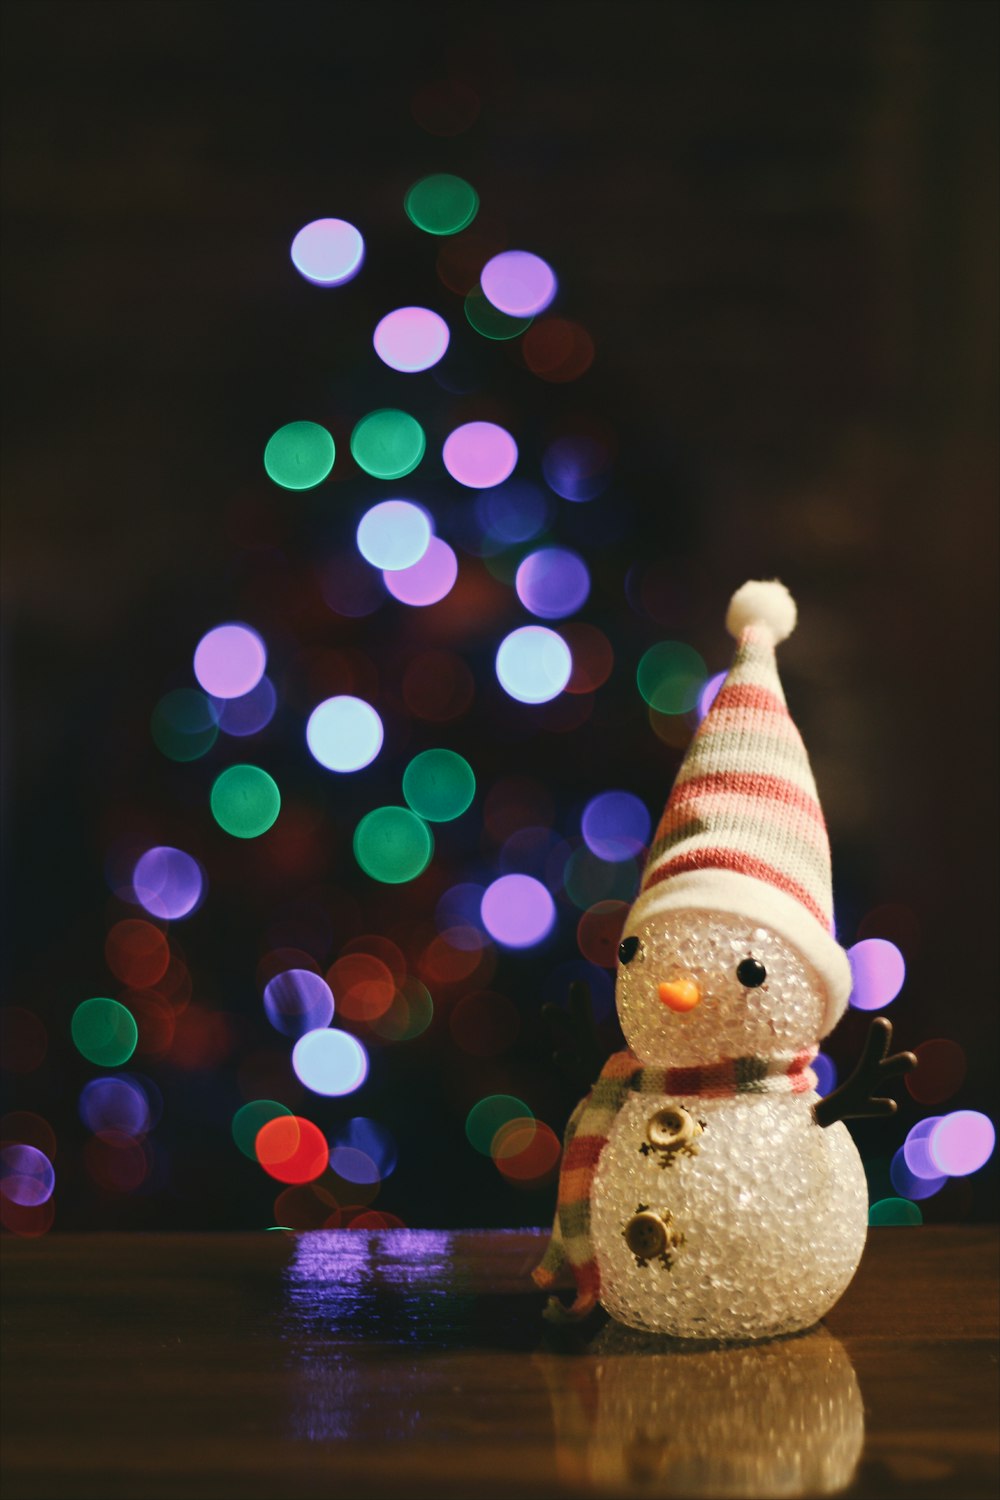 Une petite figure de bonhomme de neige assis par terre devant un arbre de Noël.